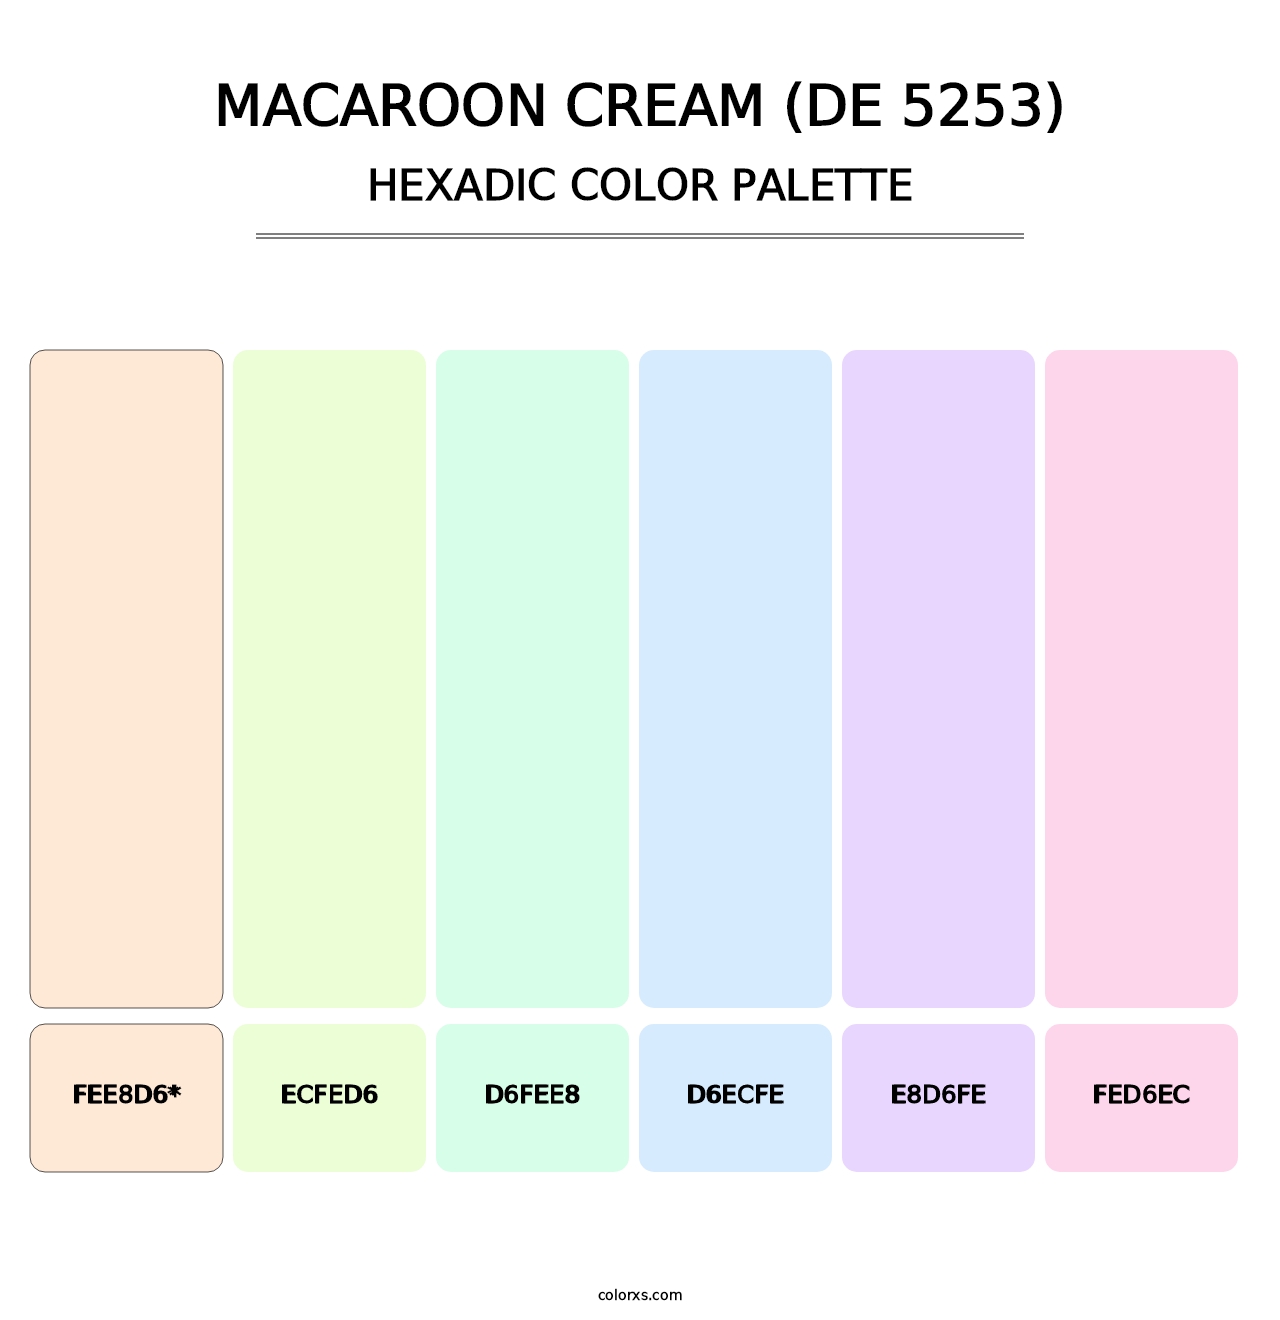 Macaroon Cream (DE 5253) - Hexadic Color Palette